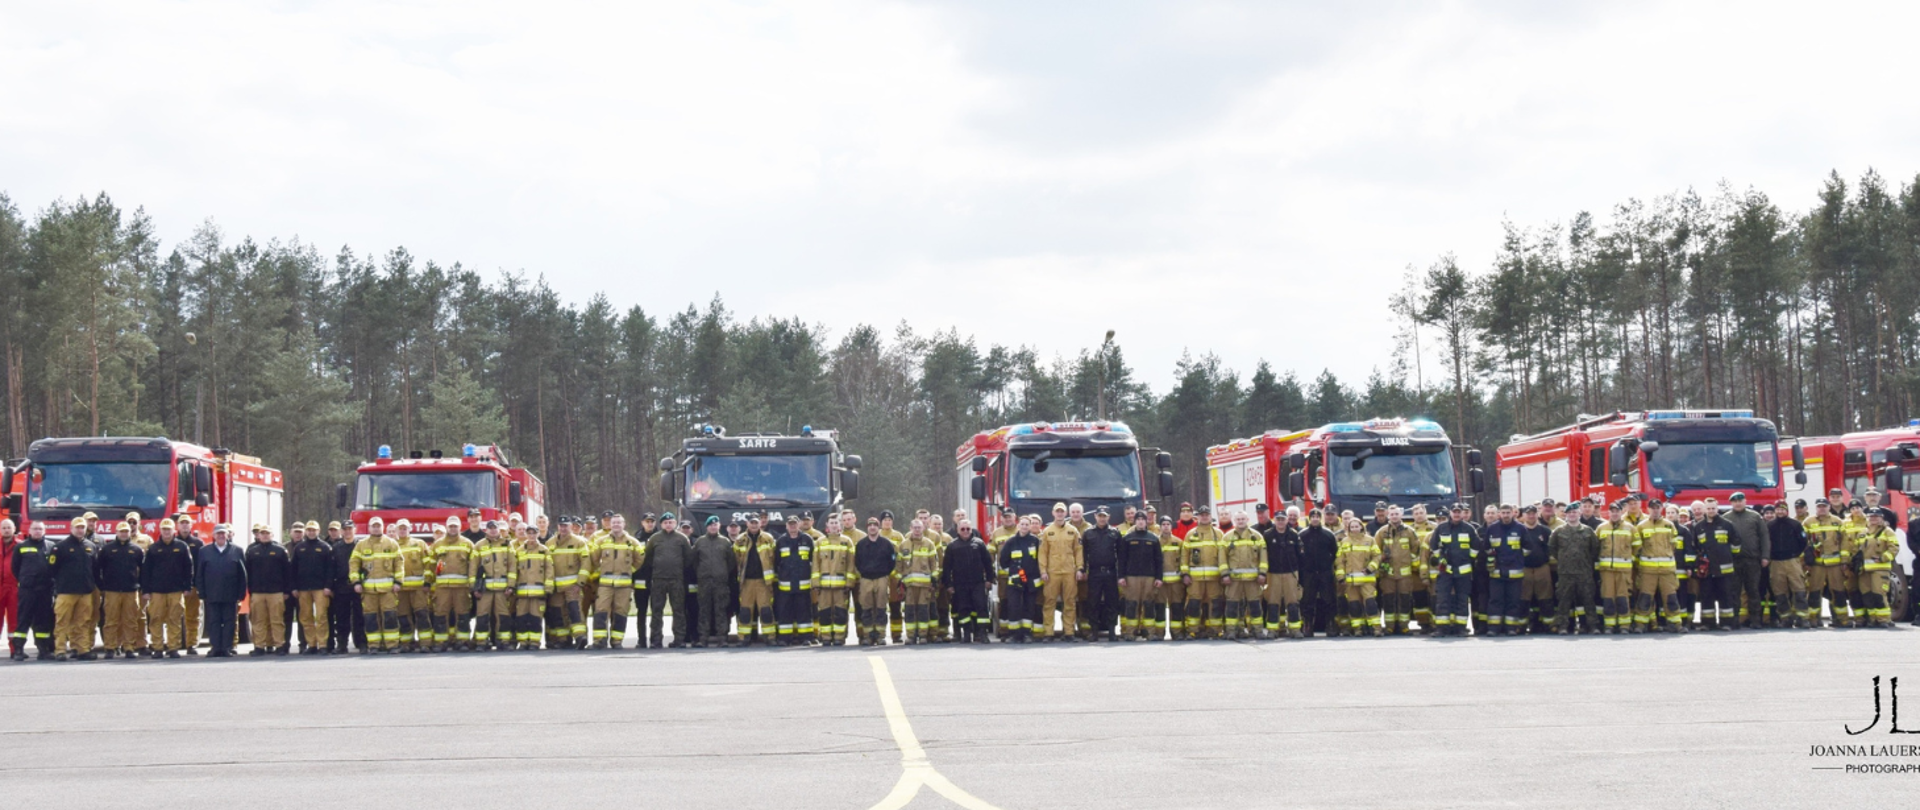 Widok panoramiczny strażaków biorących udział w manewrach na tle samochodów pożarniczych i lasu 